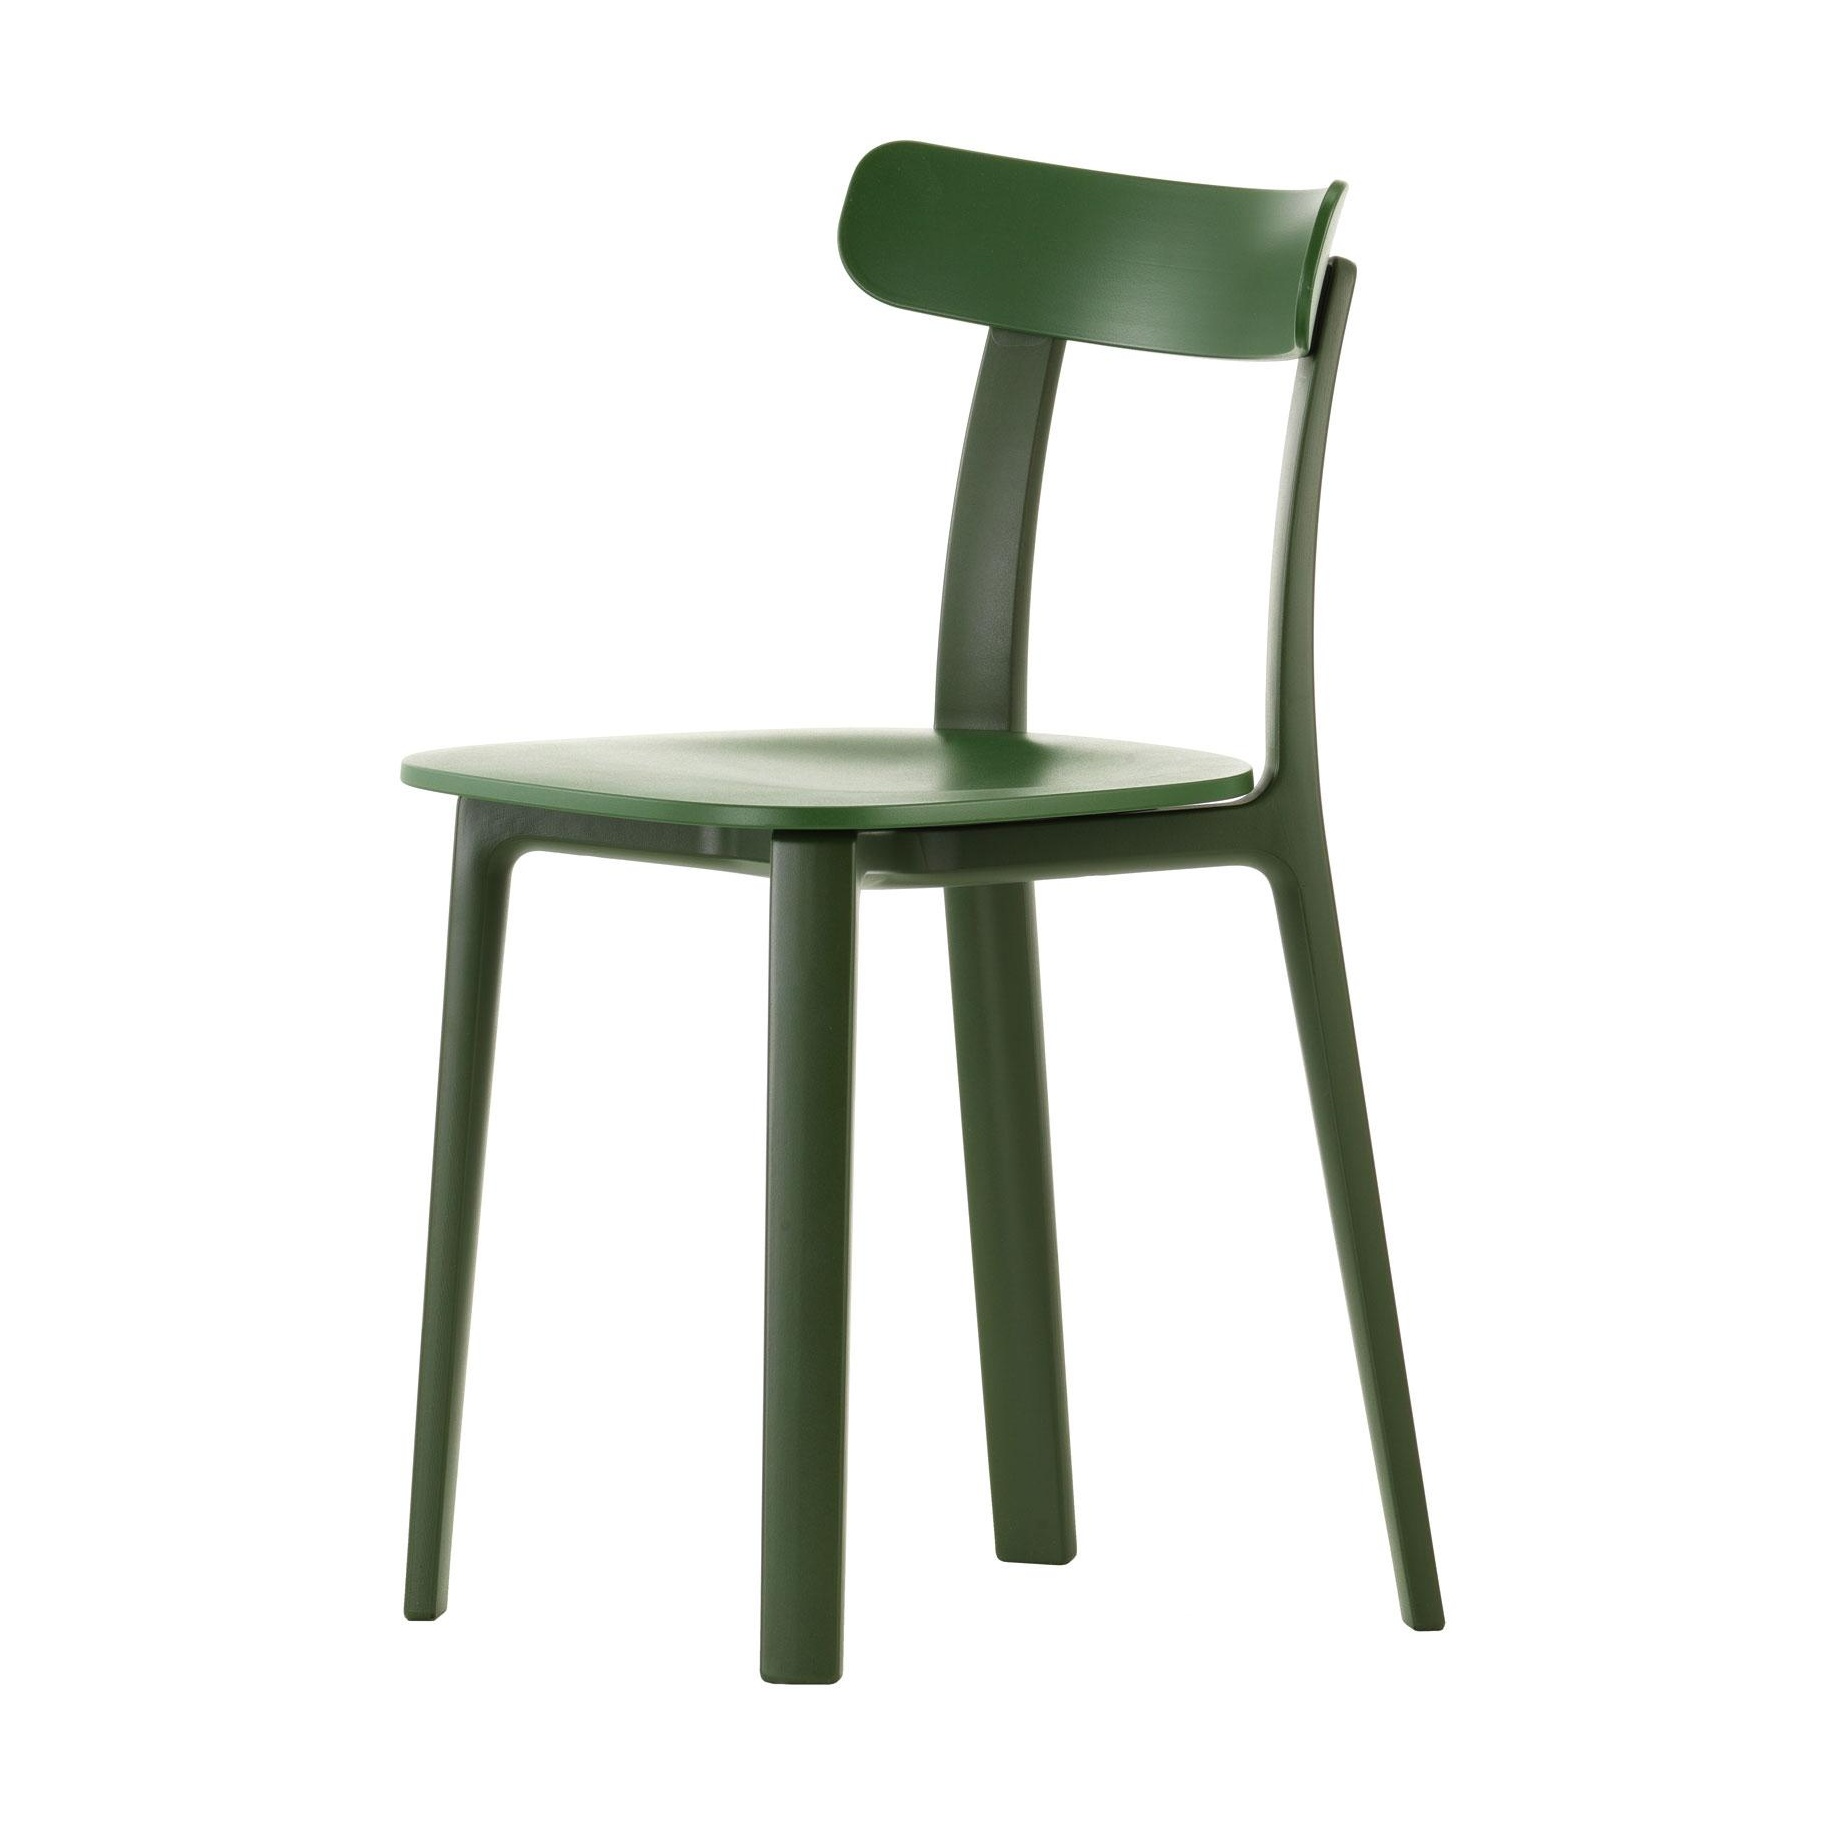 Vitra - All Plastic Chair Stuhl - efeu grün - two tone/für Innen- und Außenbereich geeignet/42,5x77x46cm von Vitra